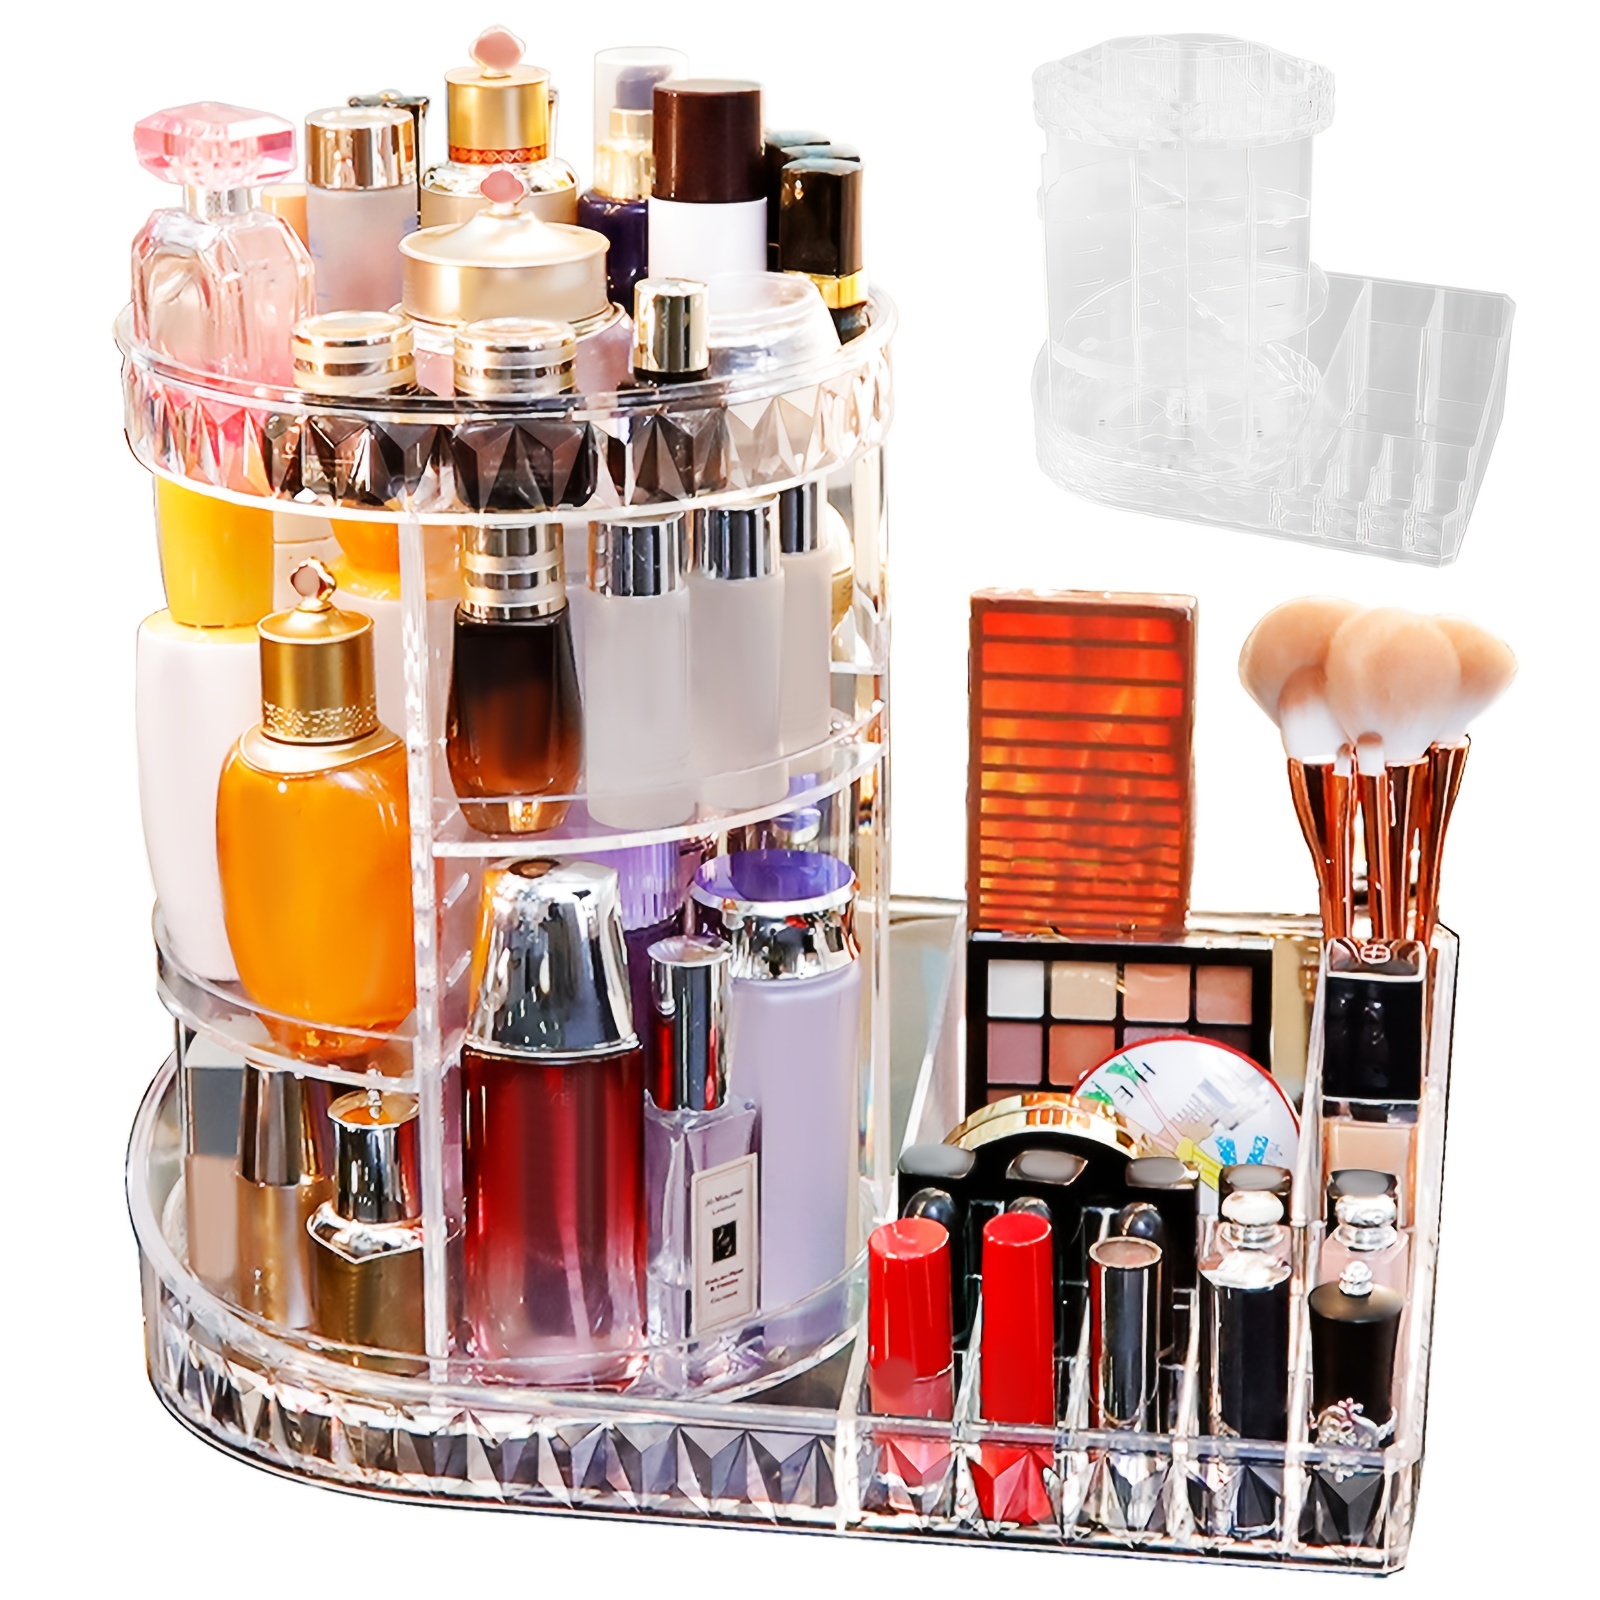 1pc 360° Rotating Makeup Organizer, DIY Adjustable Makeup Storage Rack,  Large Capacity Makeup Caddy Shelf, Cosmetics For Organizer For Countertop